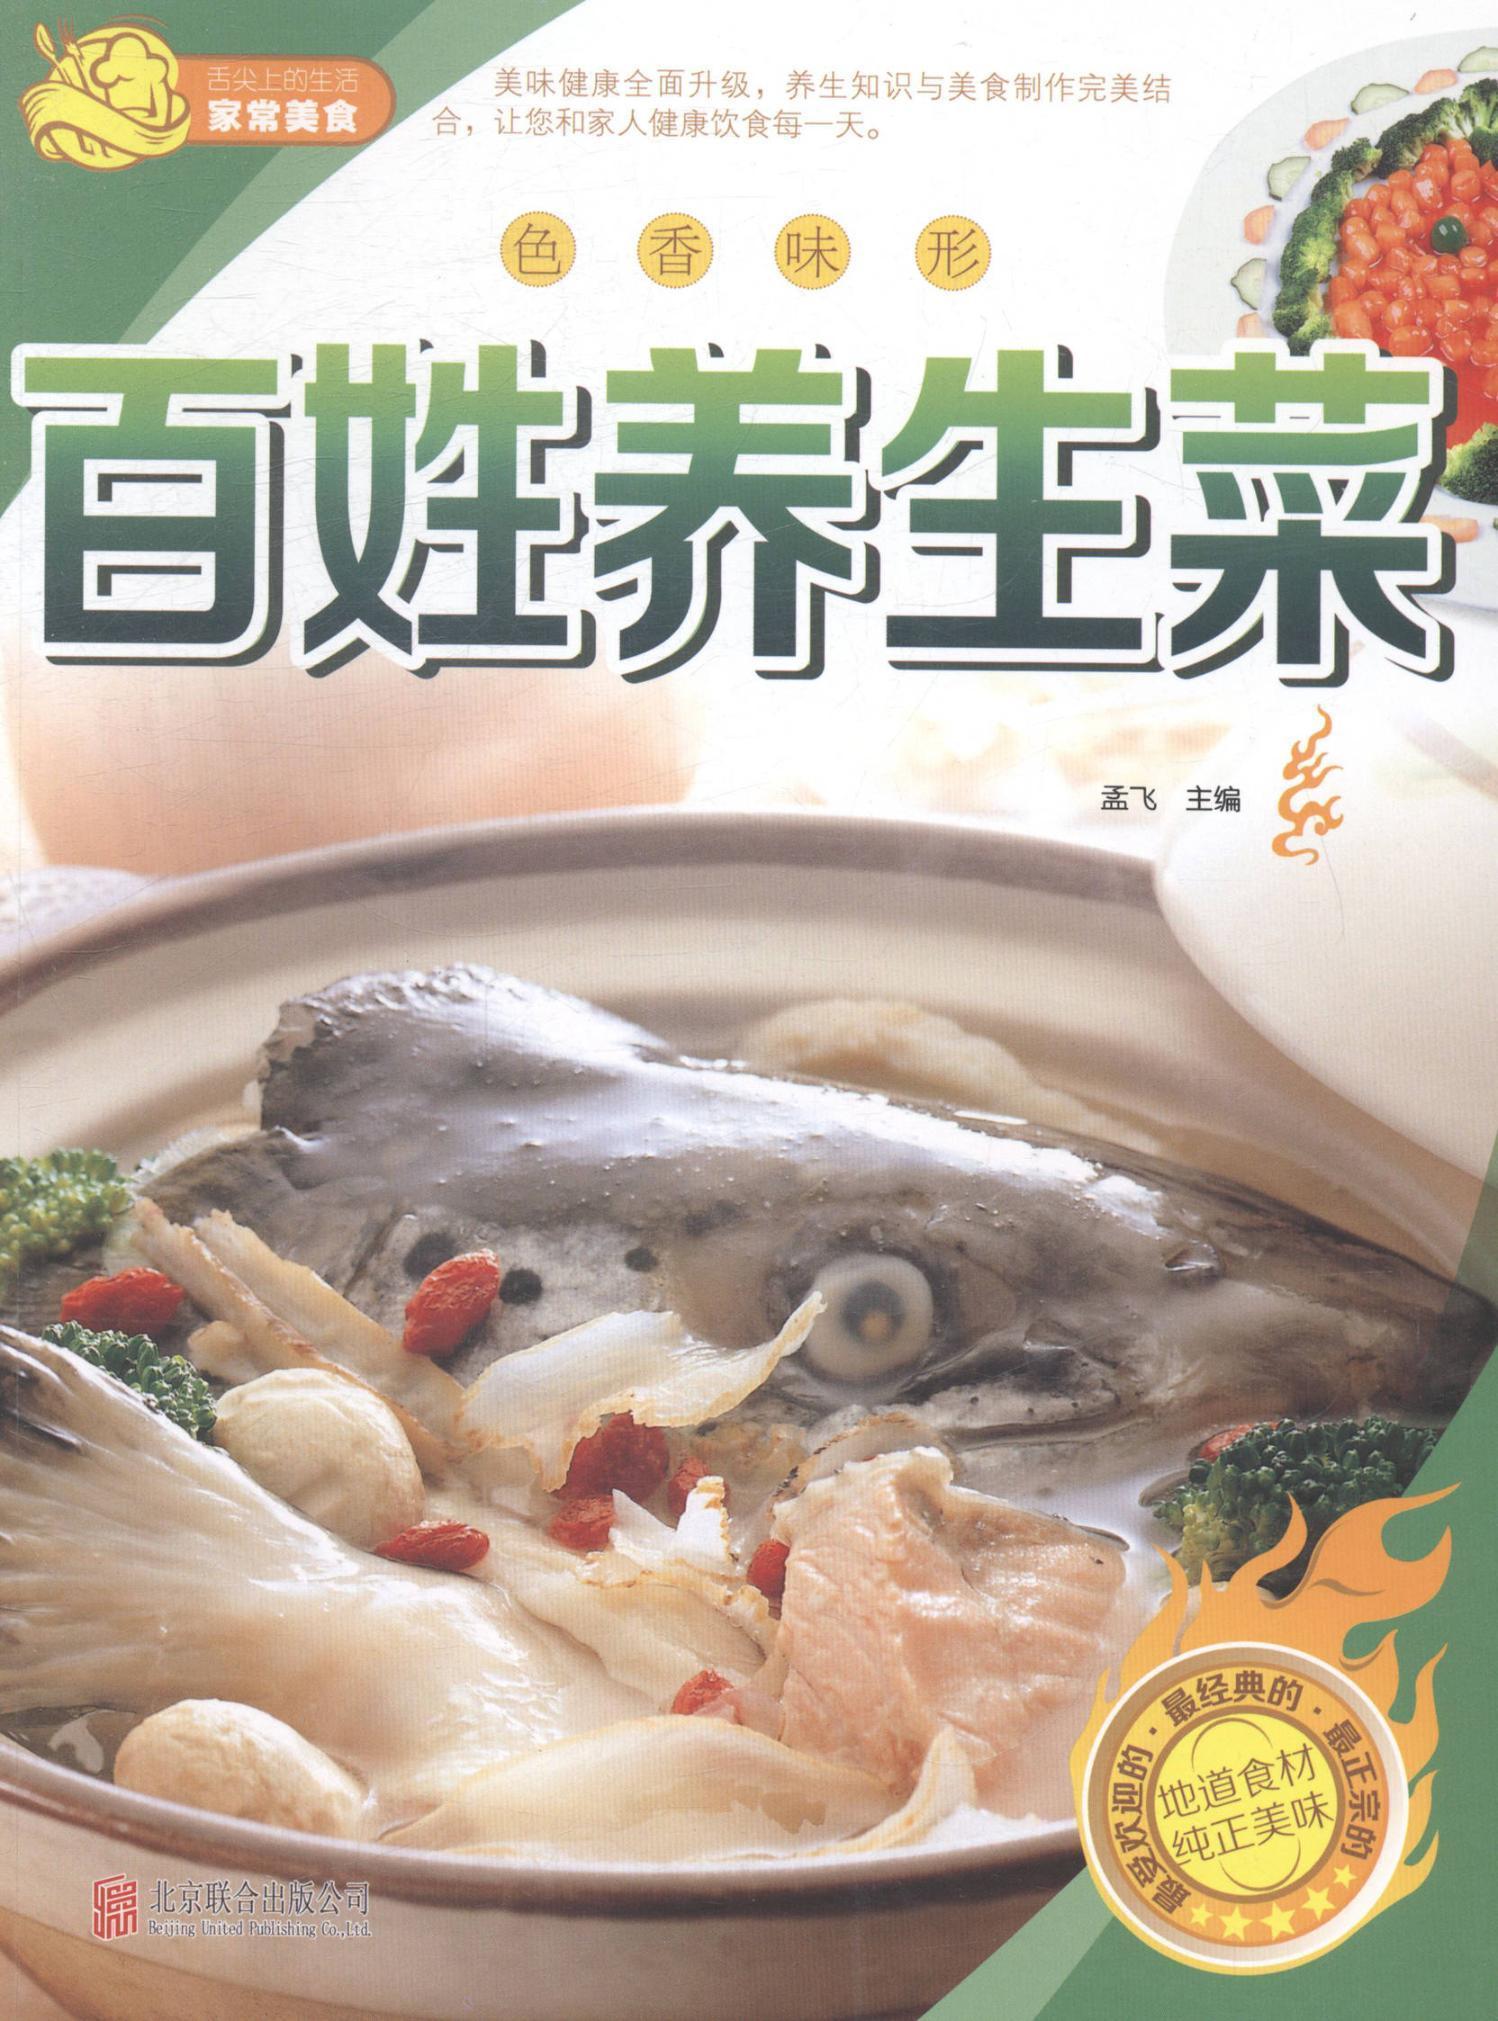 色香味形——百姓养生菜孟飞北京联合出版有限责任公司9787550229730 烹饪/美食书籍